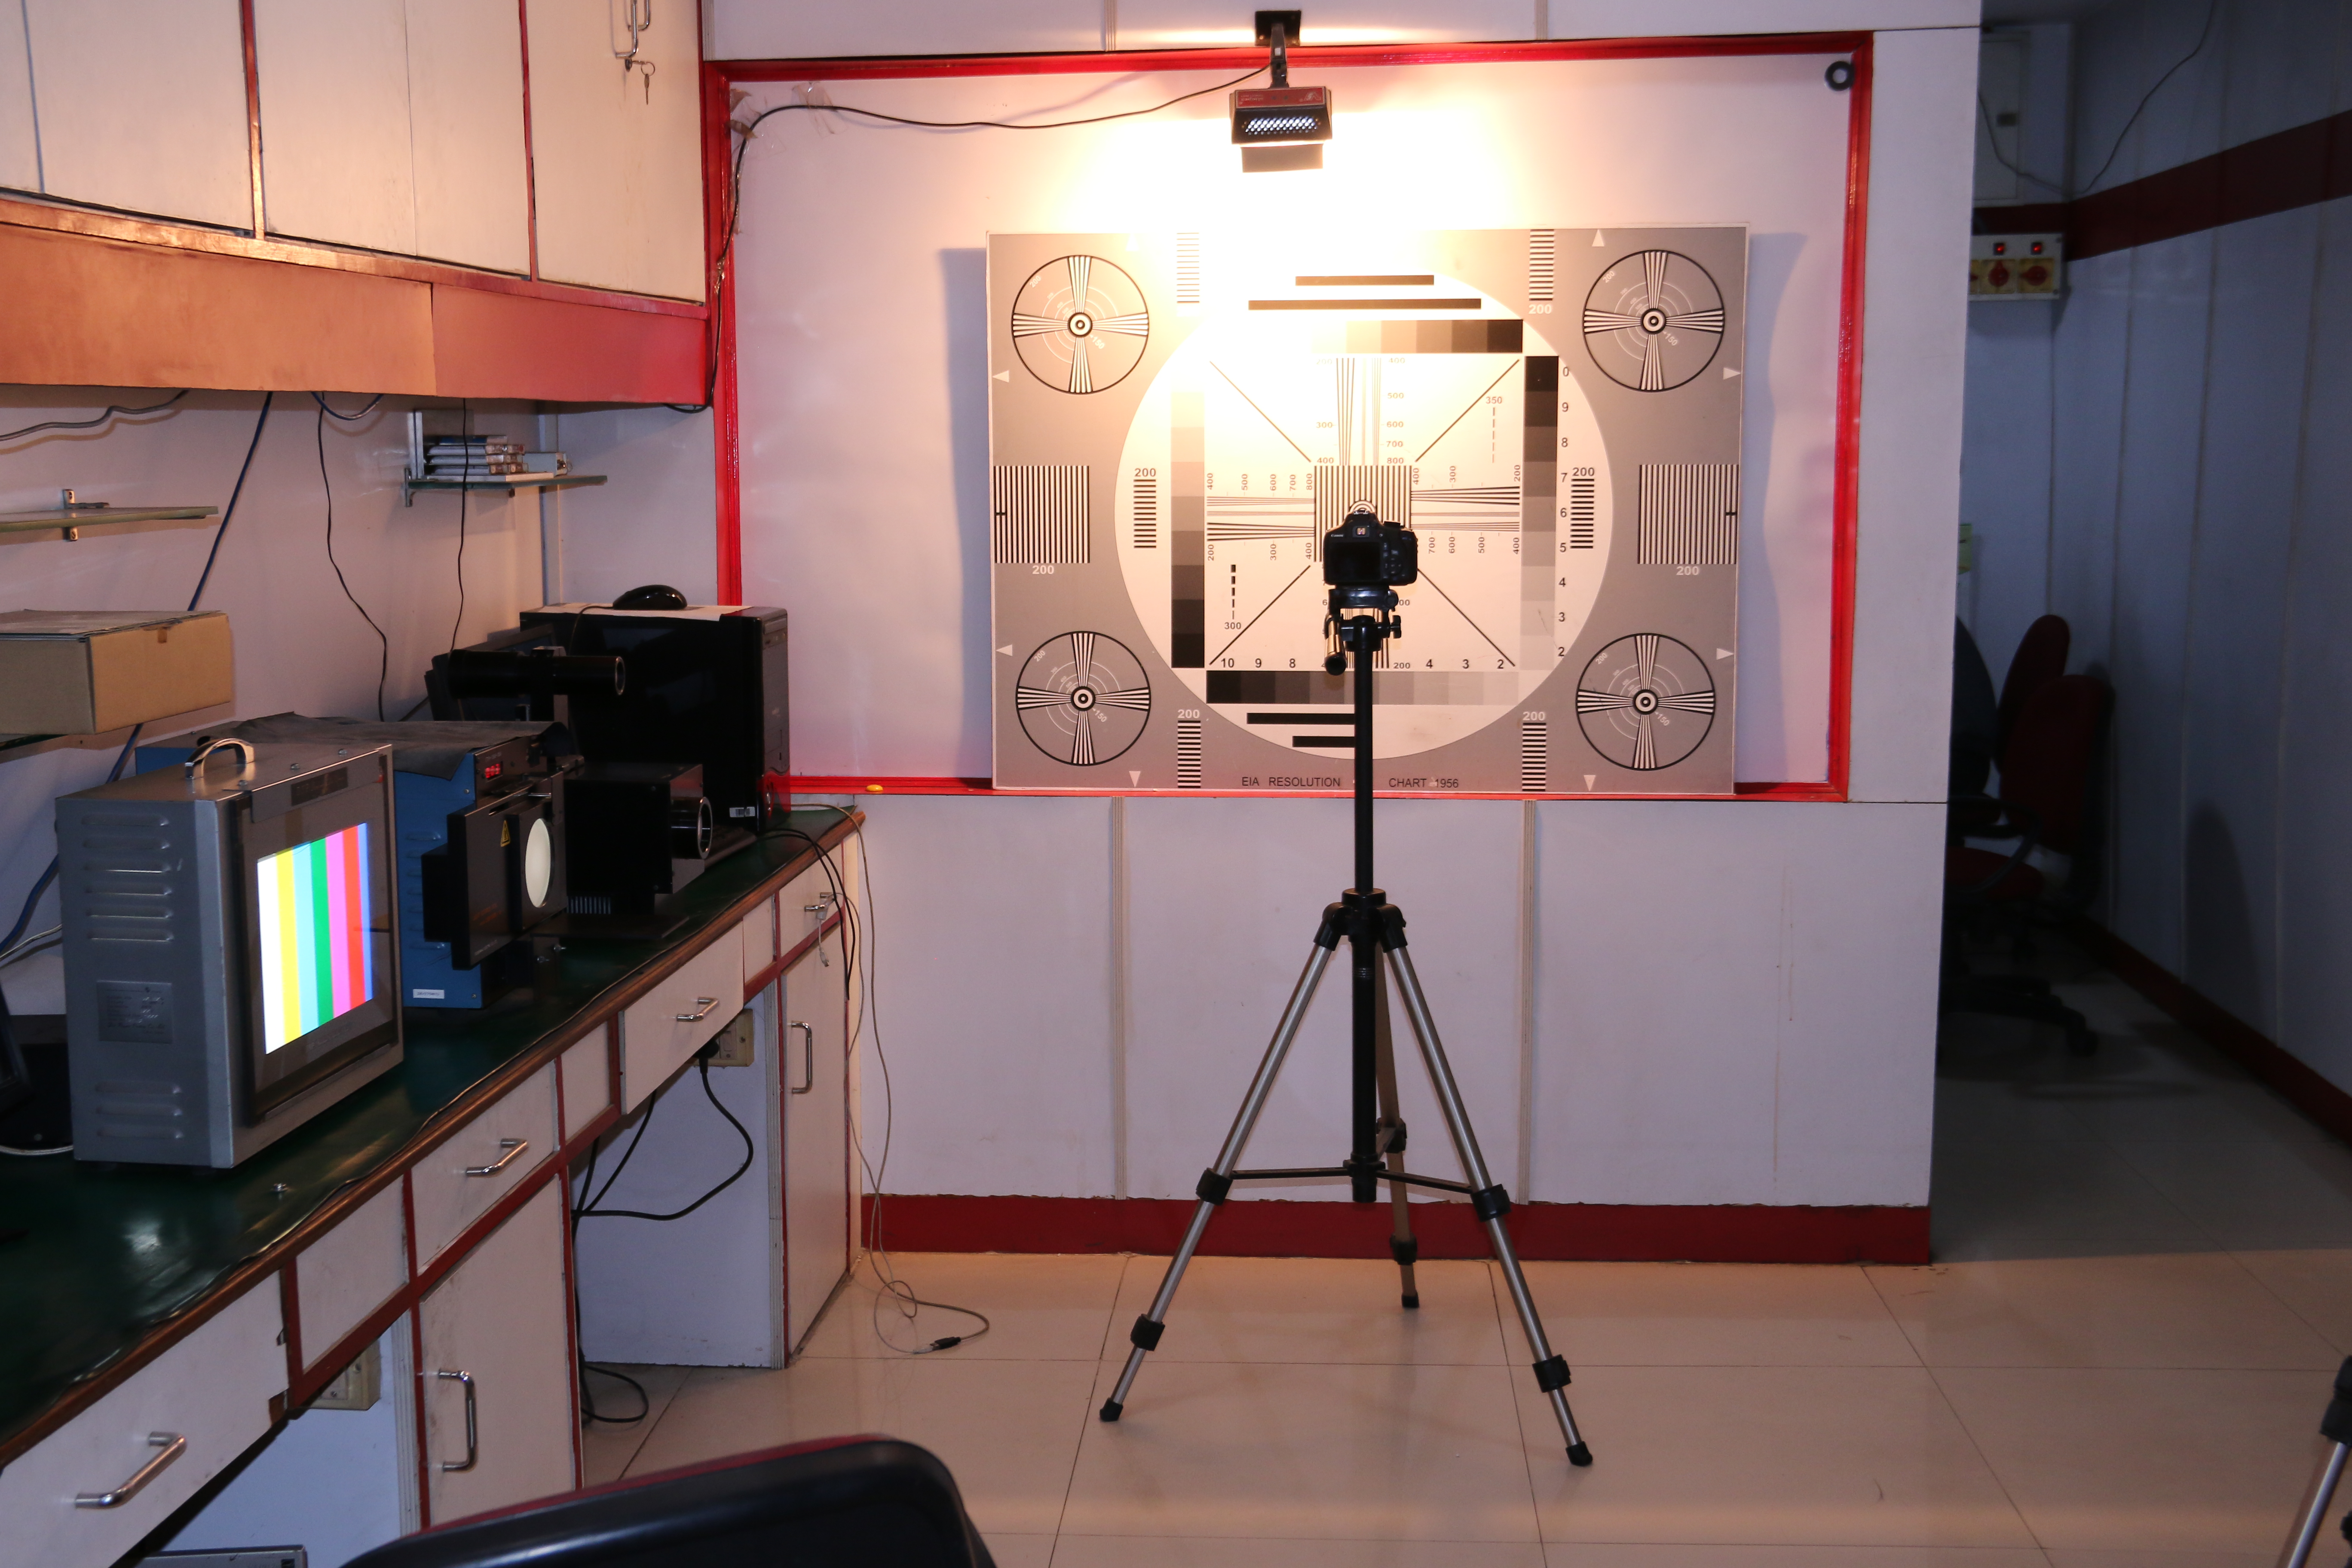 Camera Service Centre in Chennai, Coimbatore, Madurai